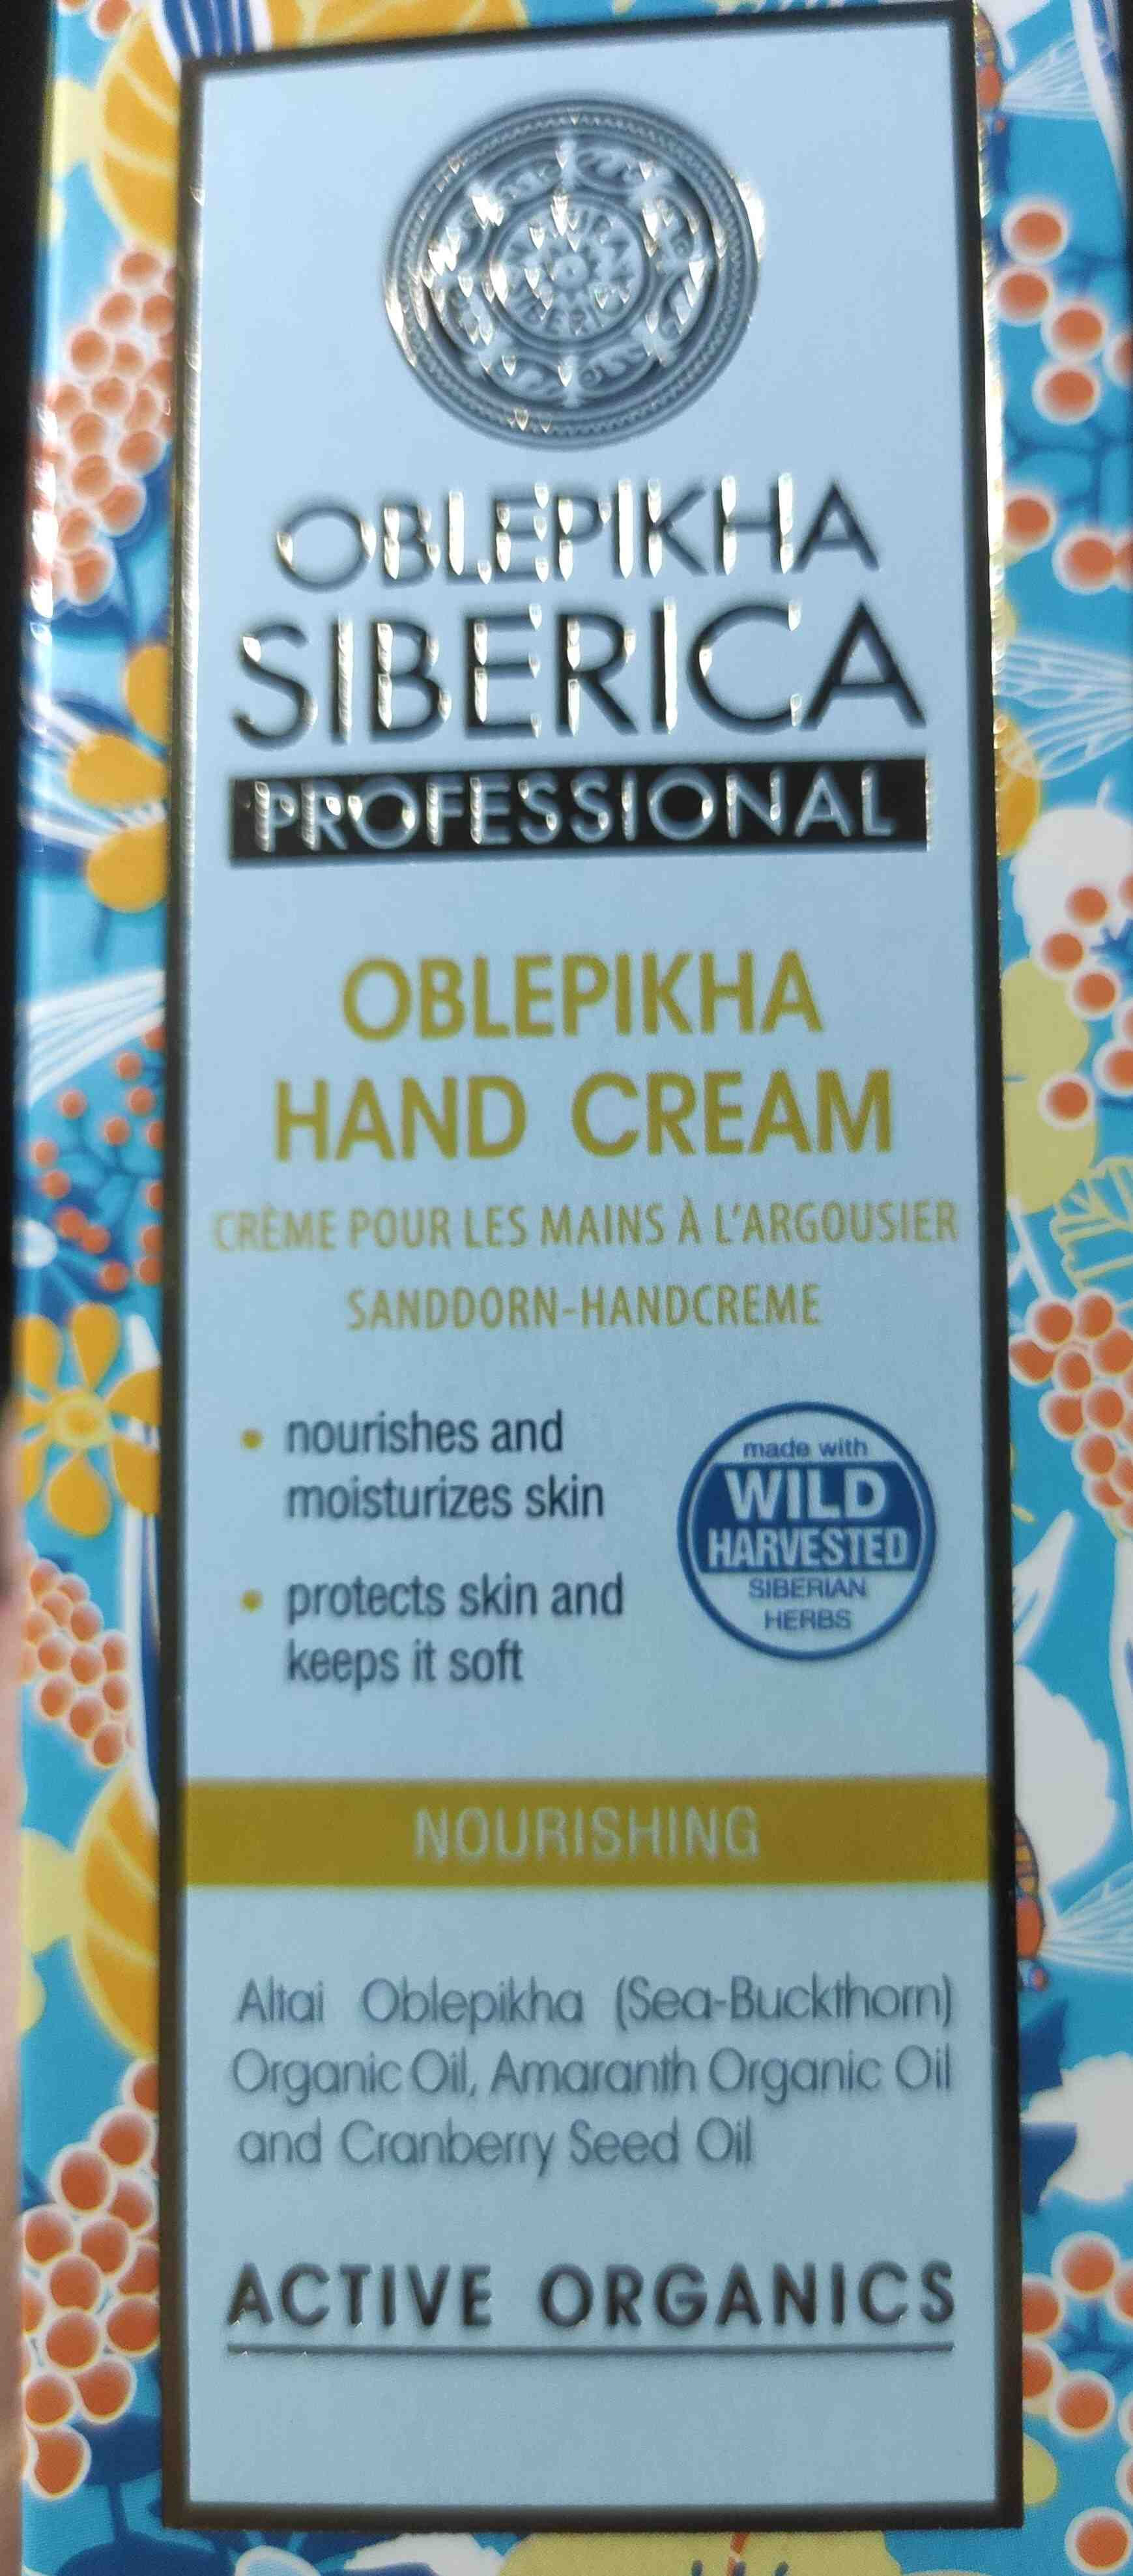 Oblekpikha Hand Cream - 製品 - en